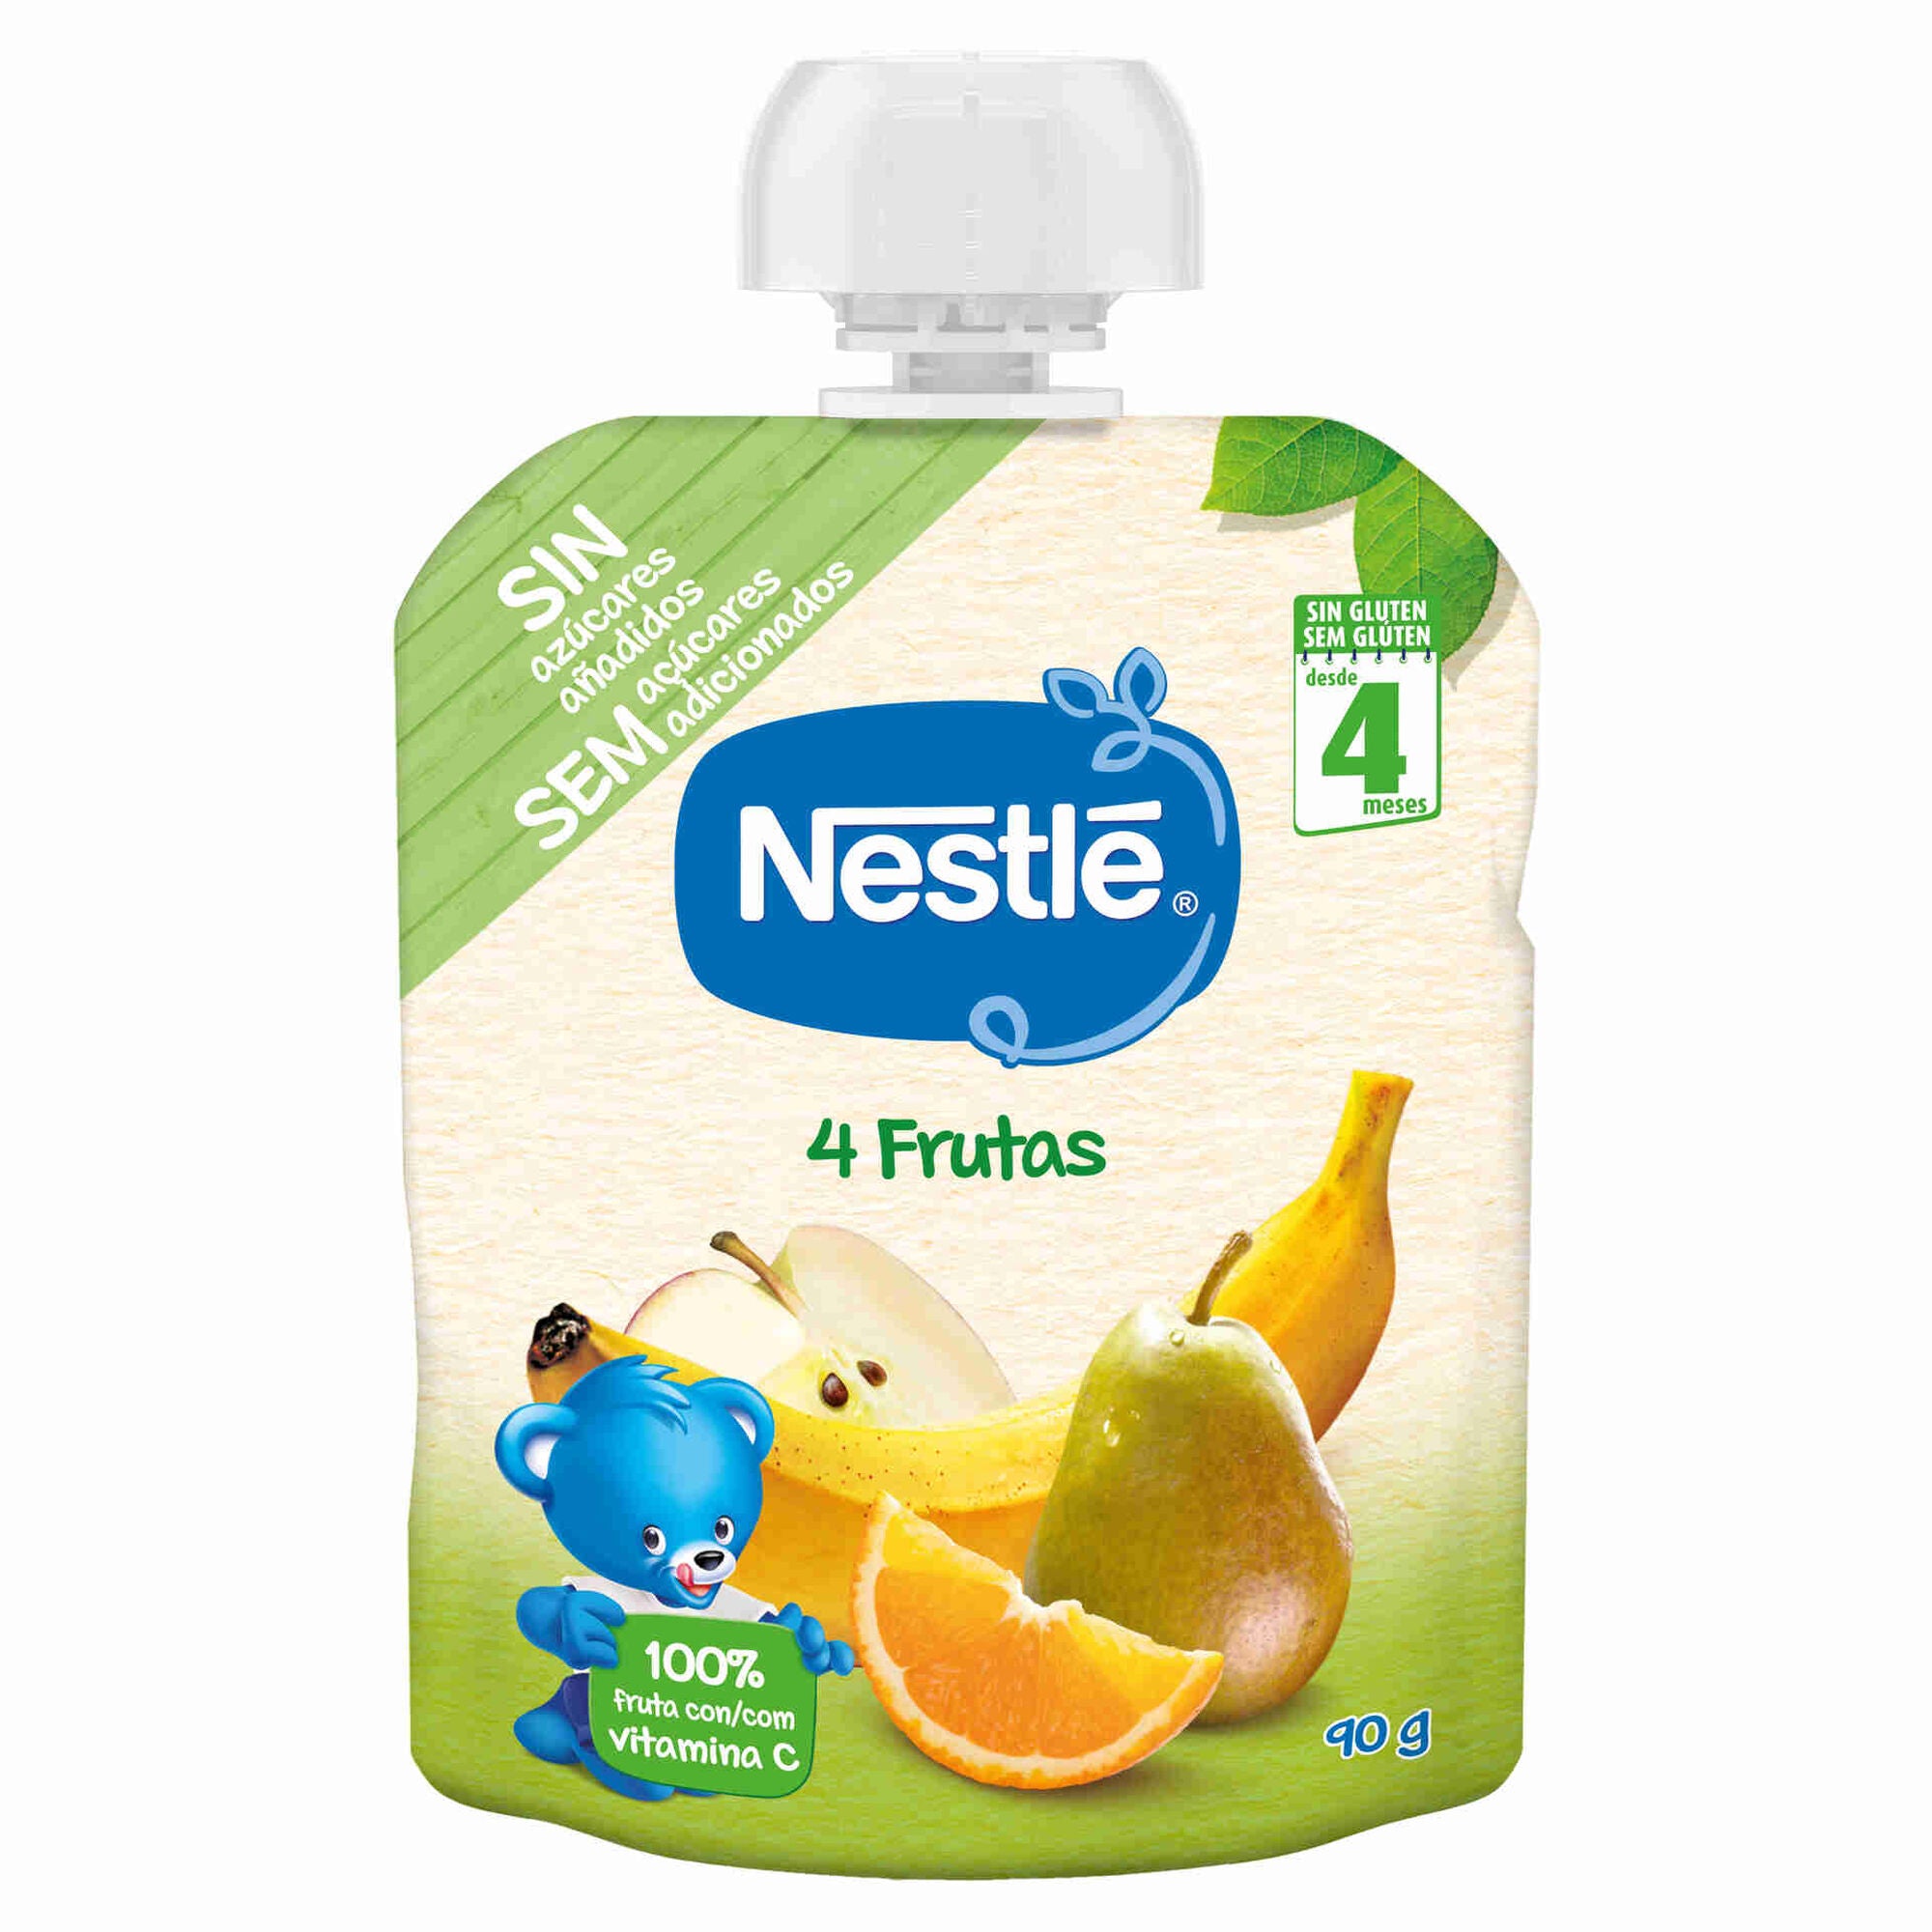 Saqueta de Frutos 4 Frutos Nestlé